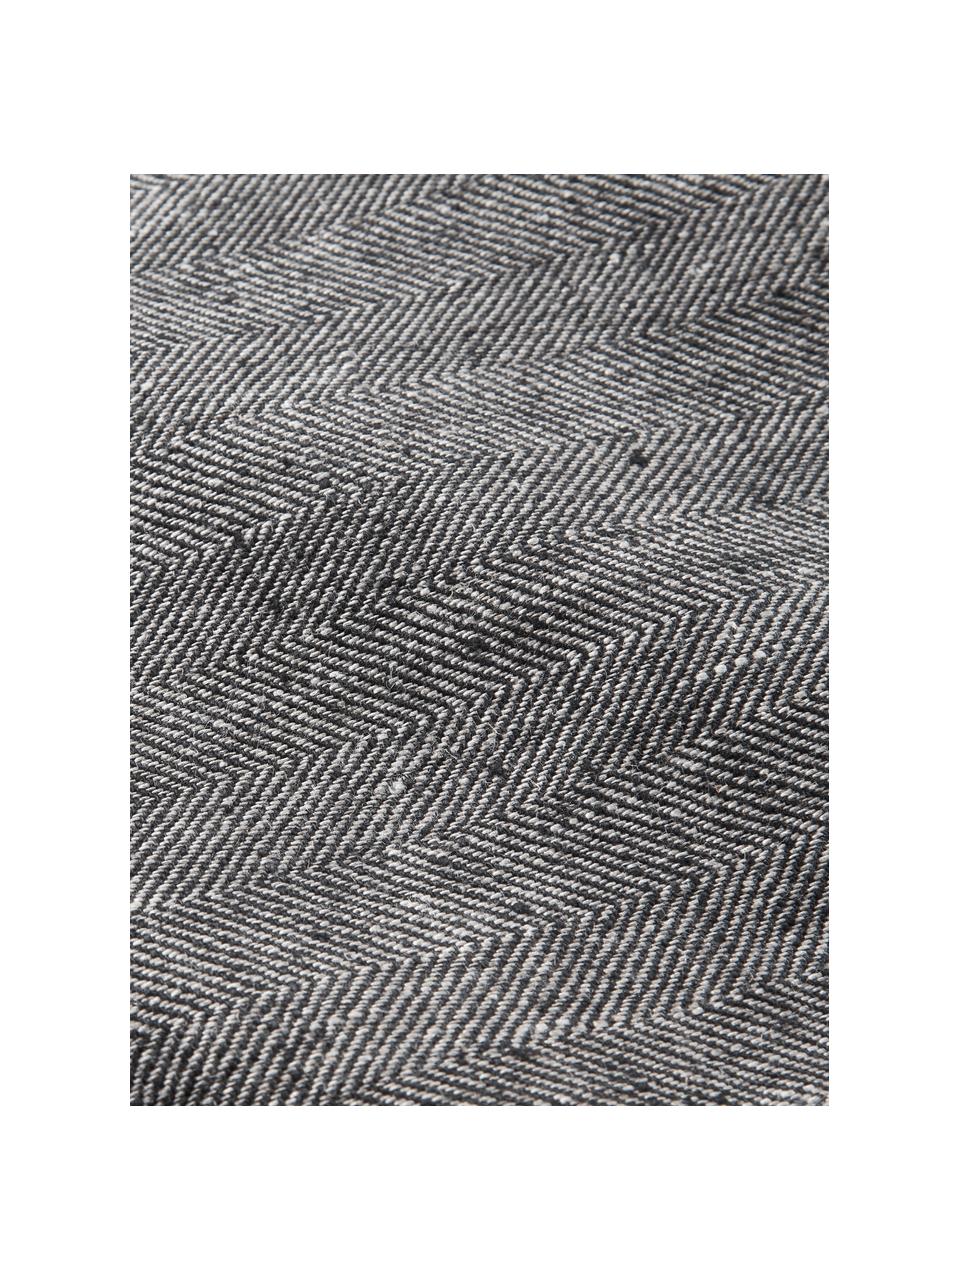 Lněný stolní běhoun se vzorem rybí kosti Audra, 100 % len, Černá, šedá, Š 46 cm, D 147 cm